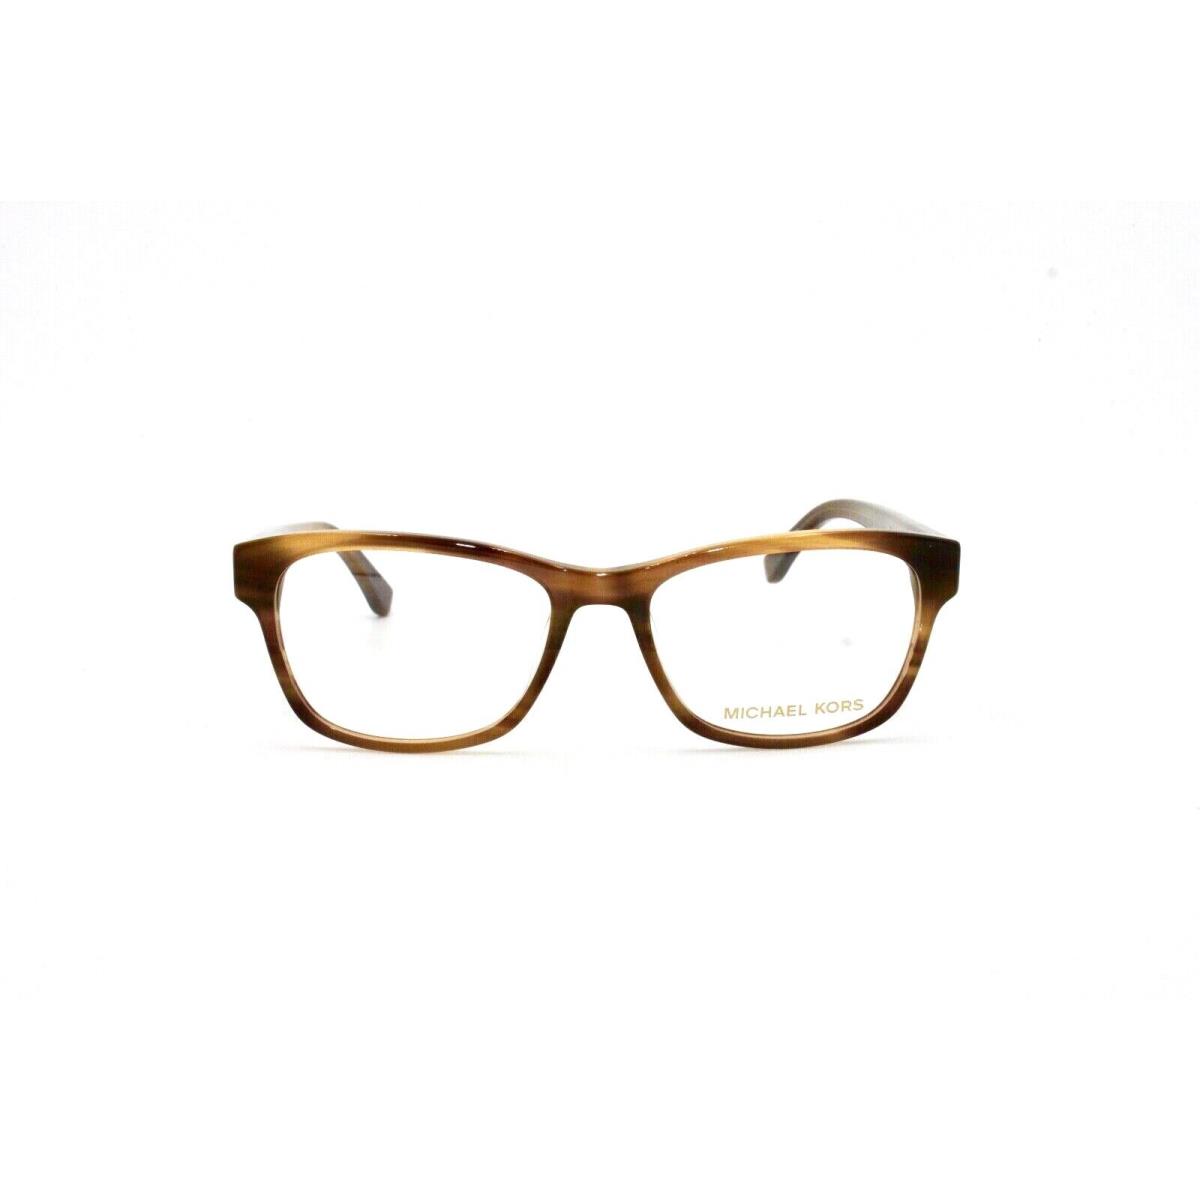 Michael Kors MK829M 226 Eyewear Frame 51 17 140